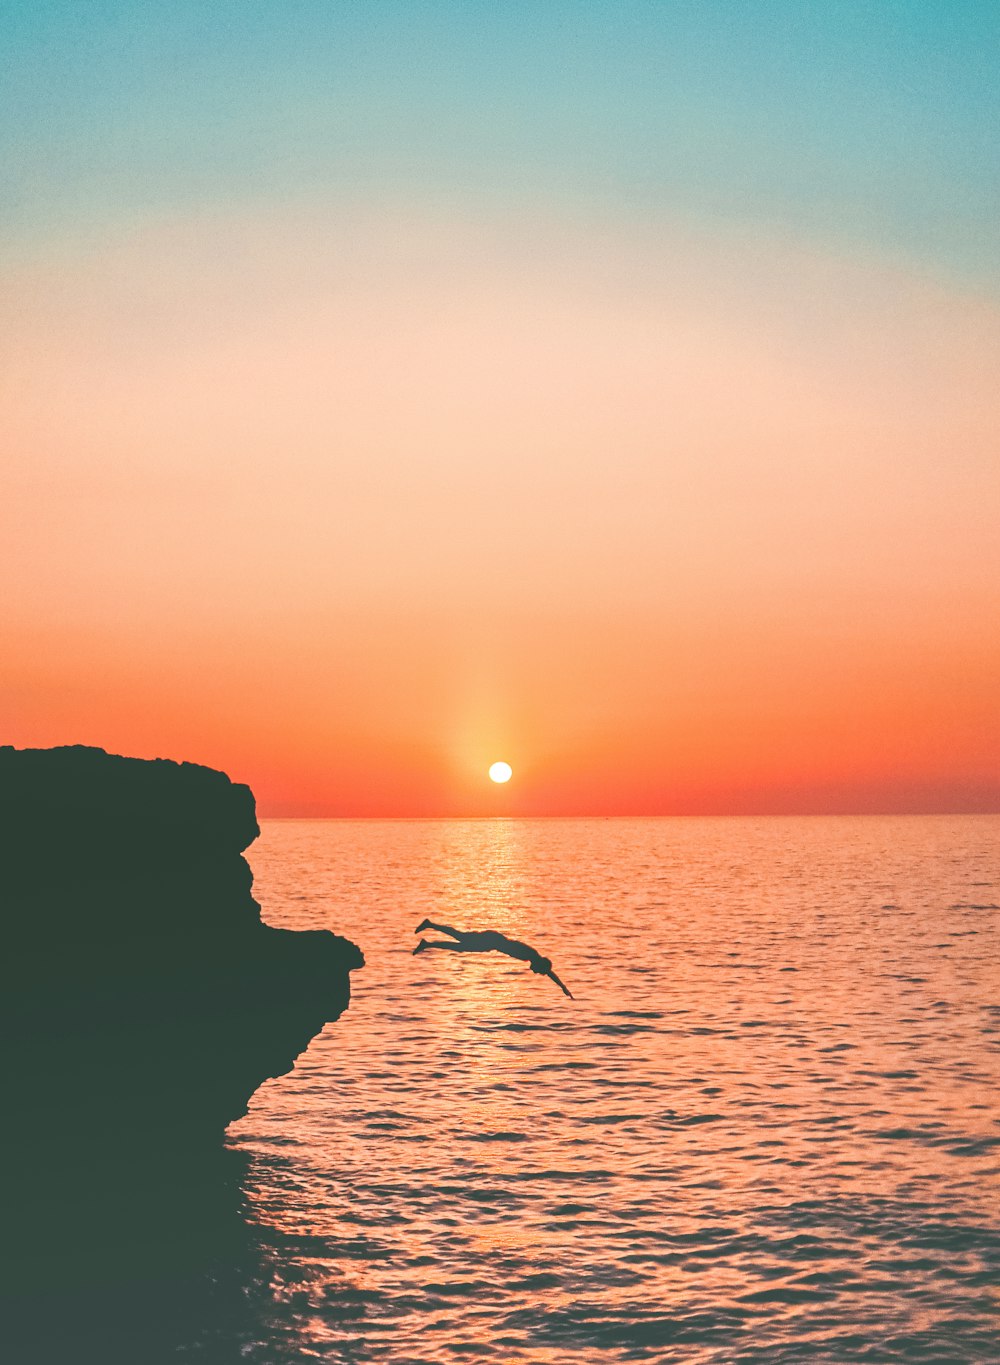 um pássaro voando sobre um corpo de água ao pôr do sol